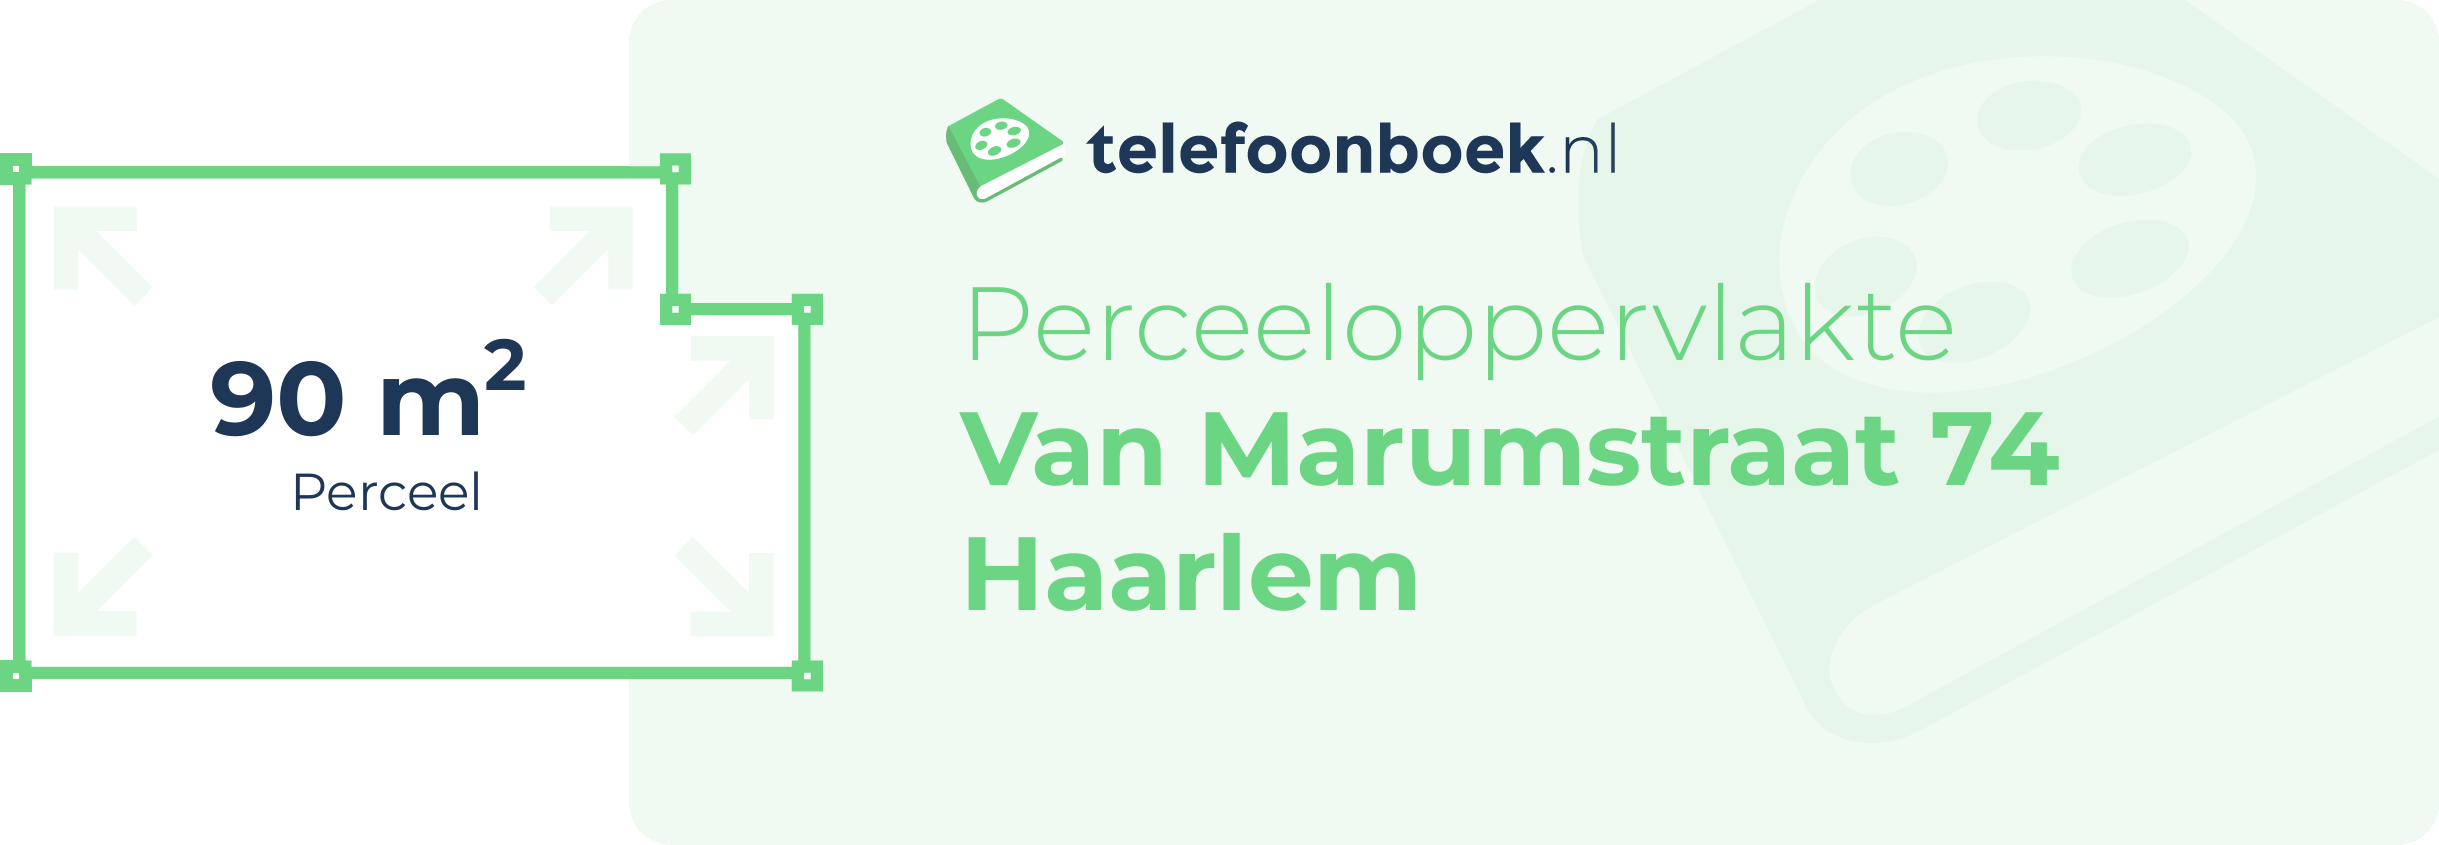 Perceeloppervlakte Van Marumstraat 74 Haarlem